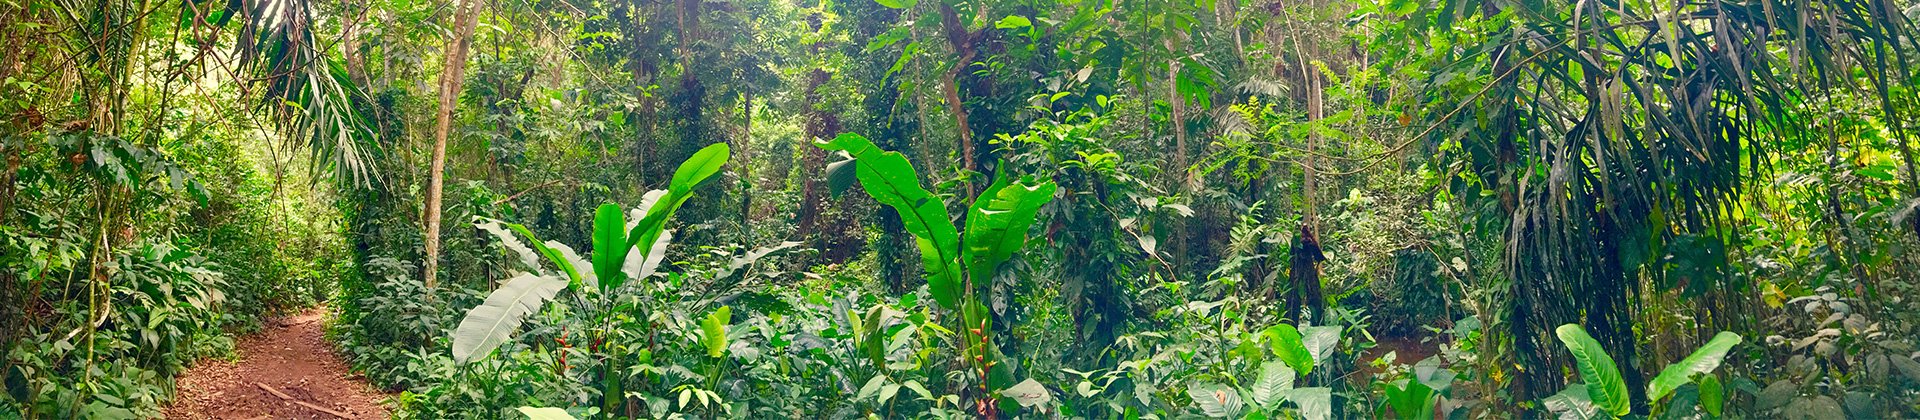 Amazonian Jungle French Guiana